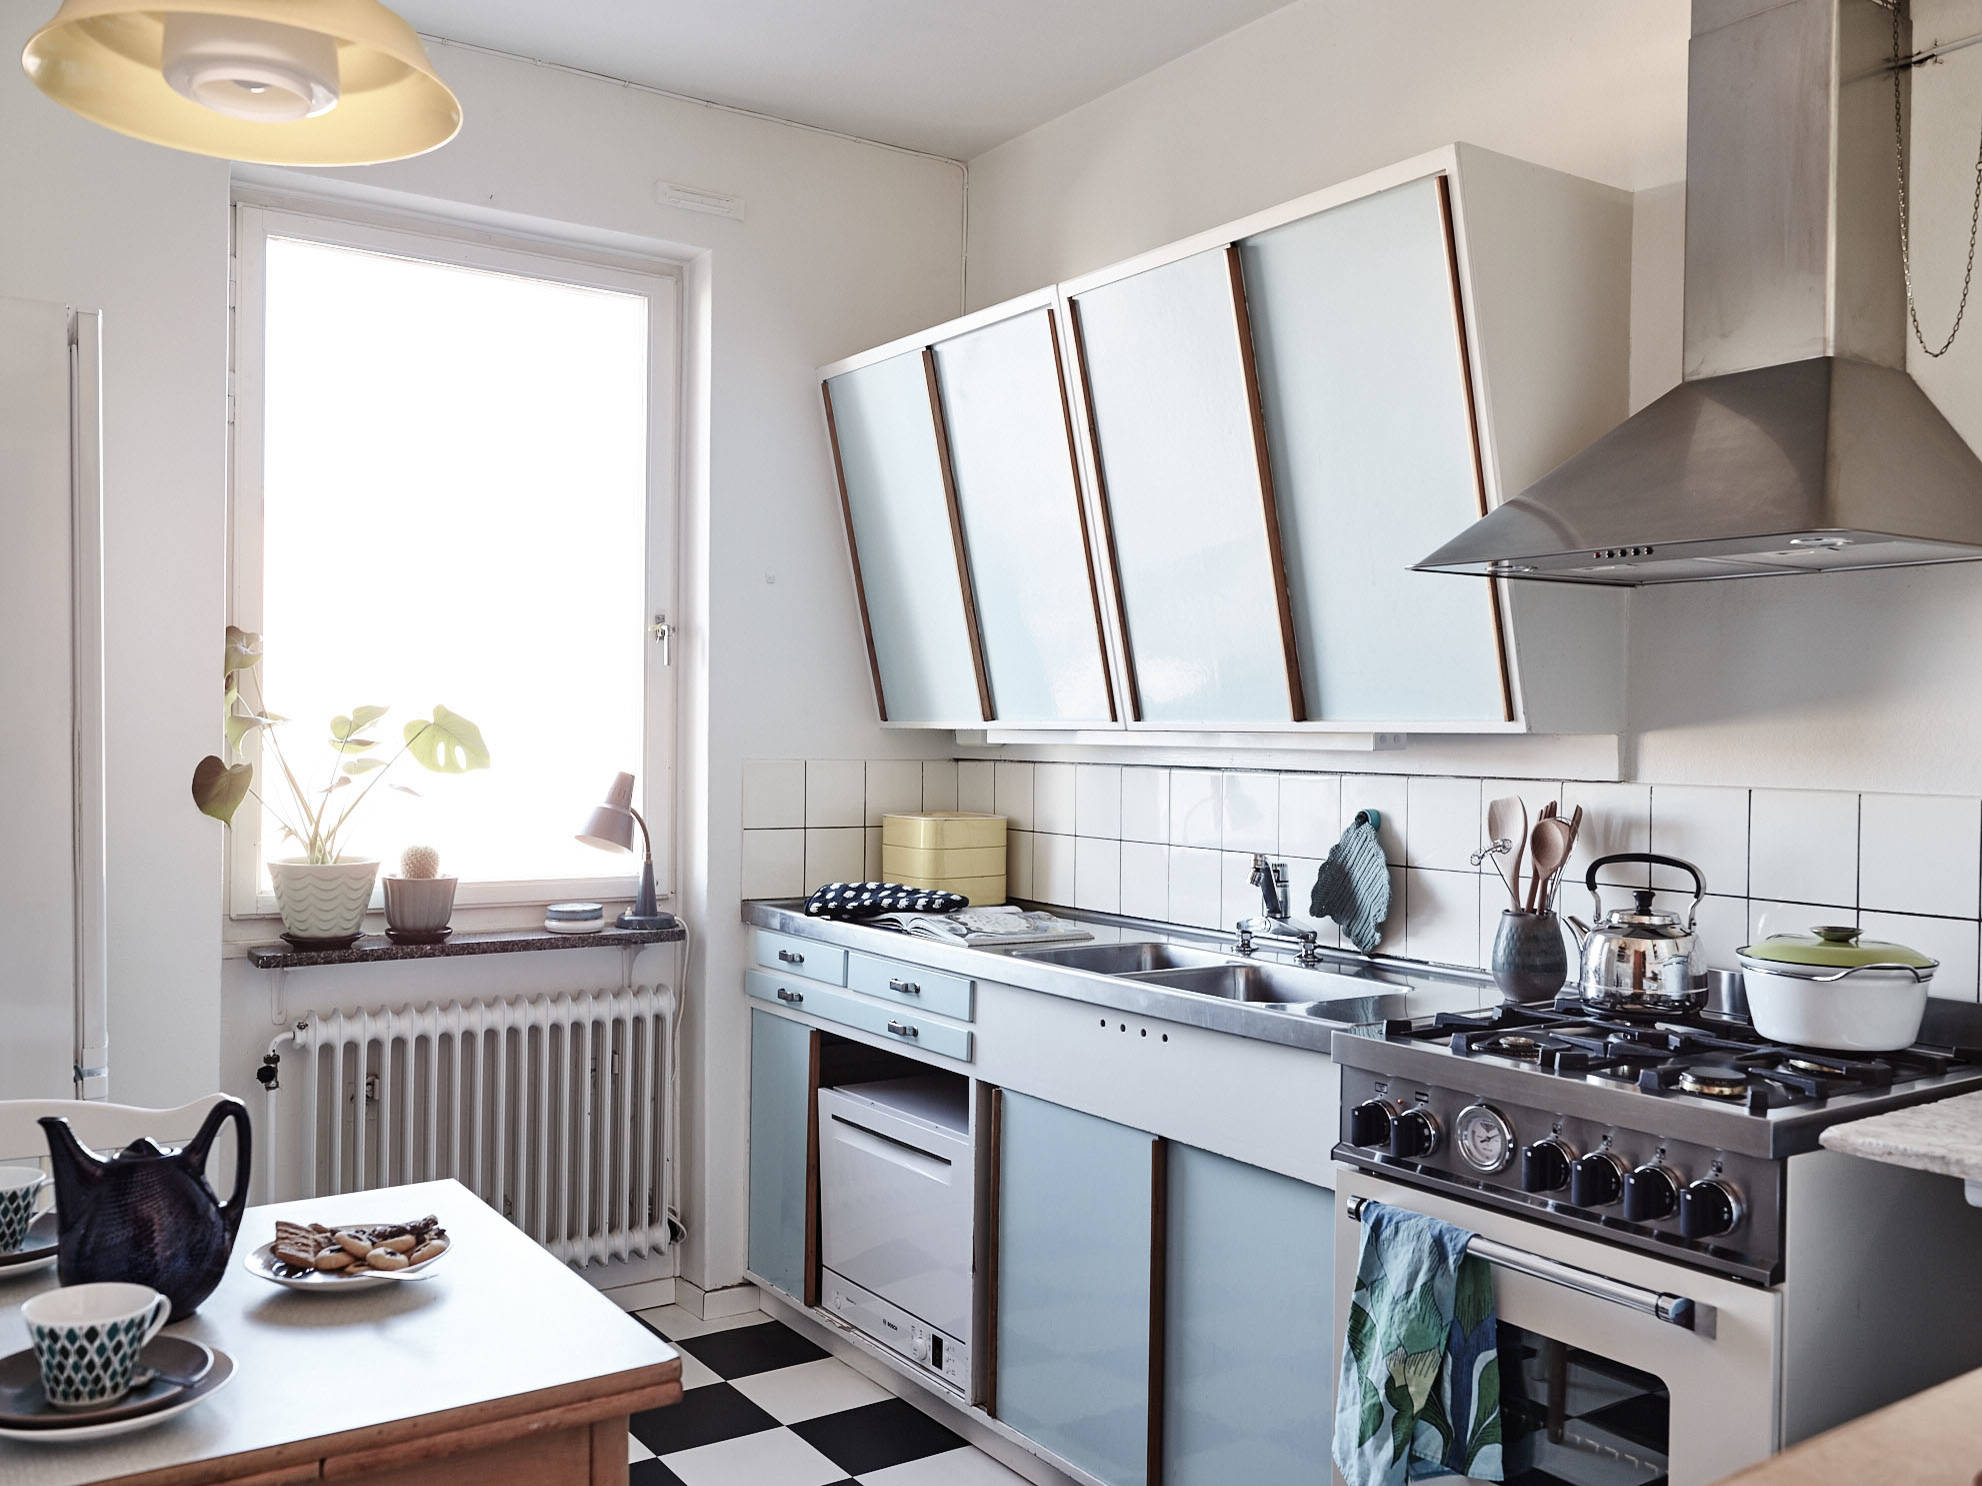 Kult-Look für die Küche: So gelingt der Retro-Stil garantiert!